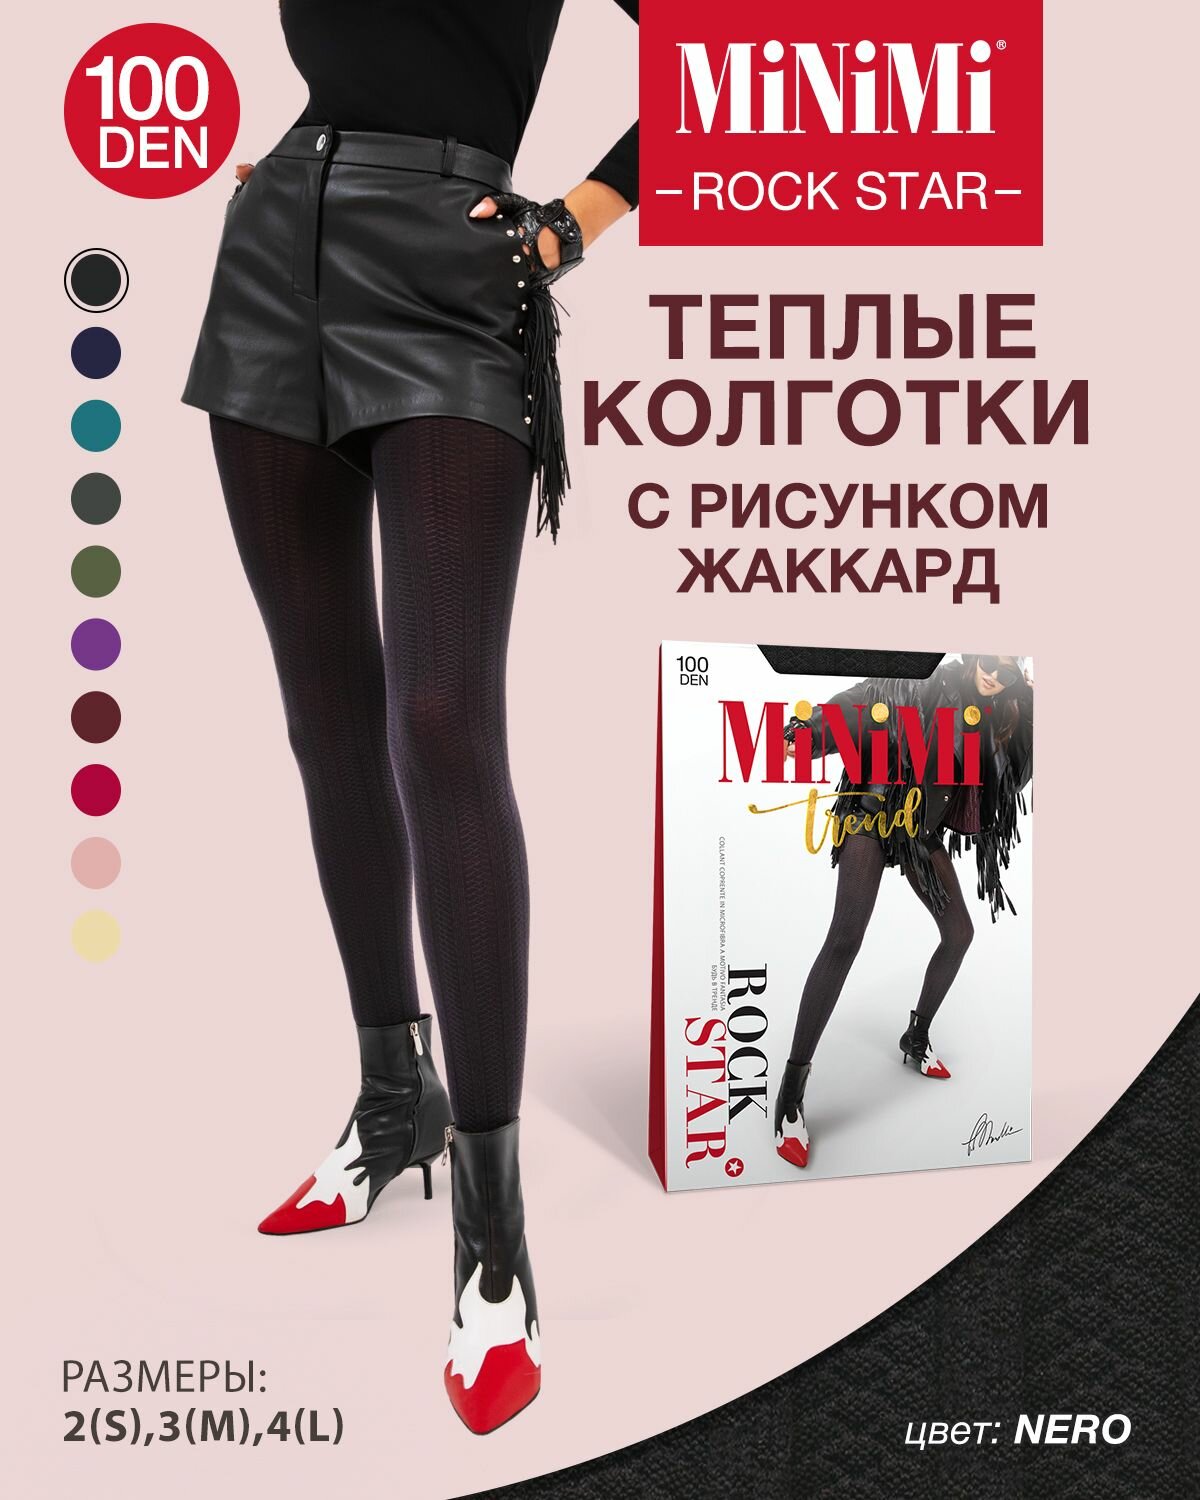 Колготки MiNiMi Rock Star, 100 den, черный — купить в интернет-магазине по  низкой цене на Яндекс Маркете